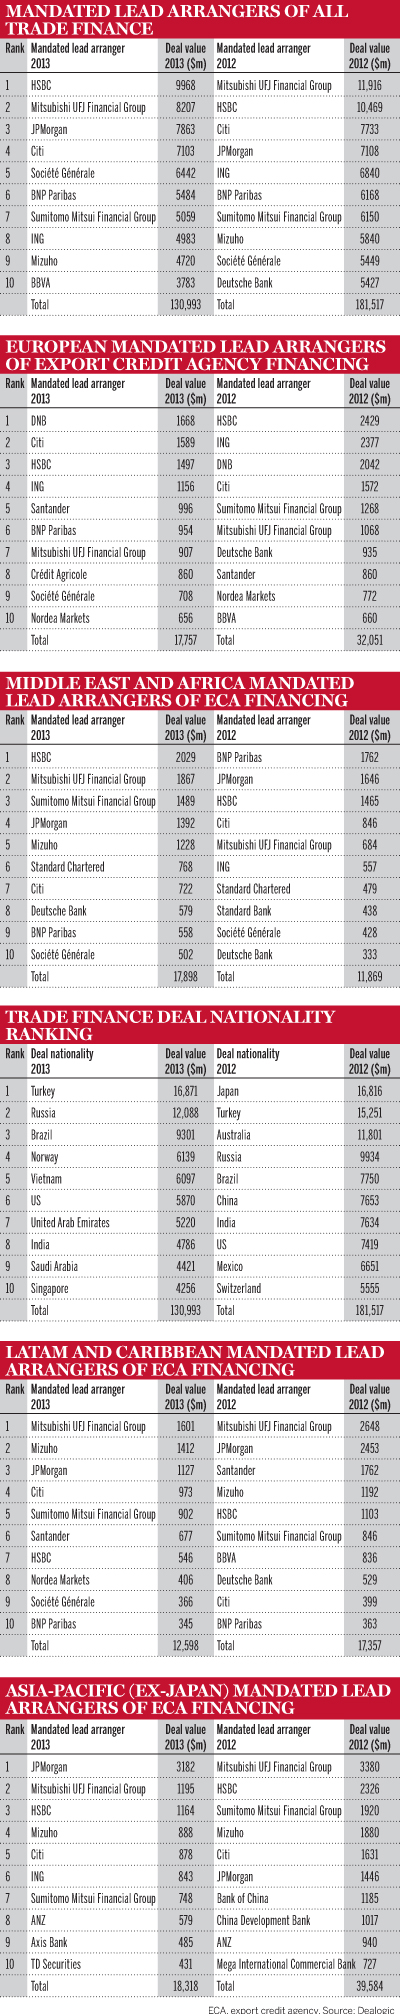 Trade finance deals